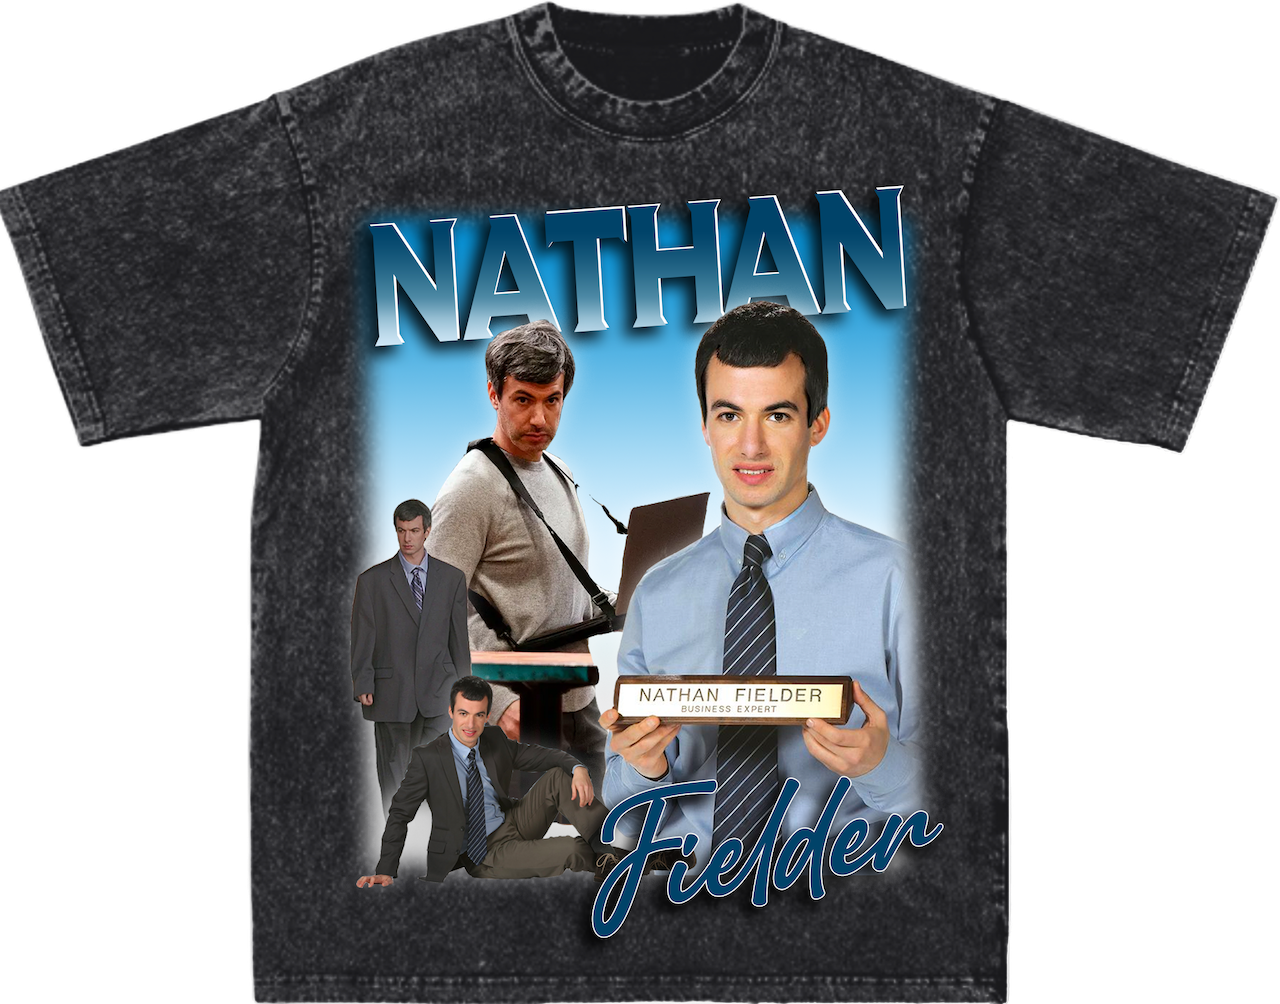 The Nathan